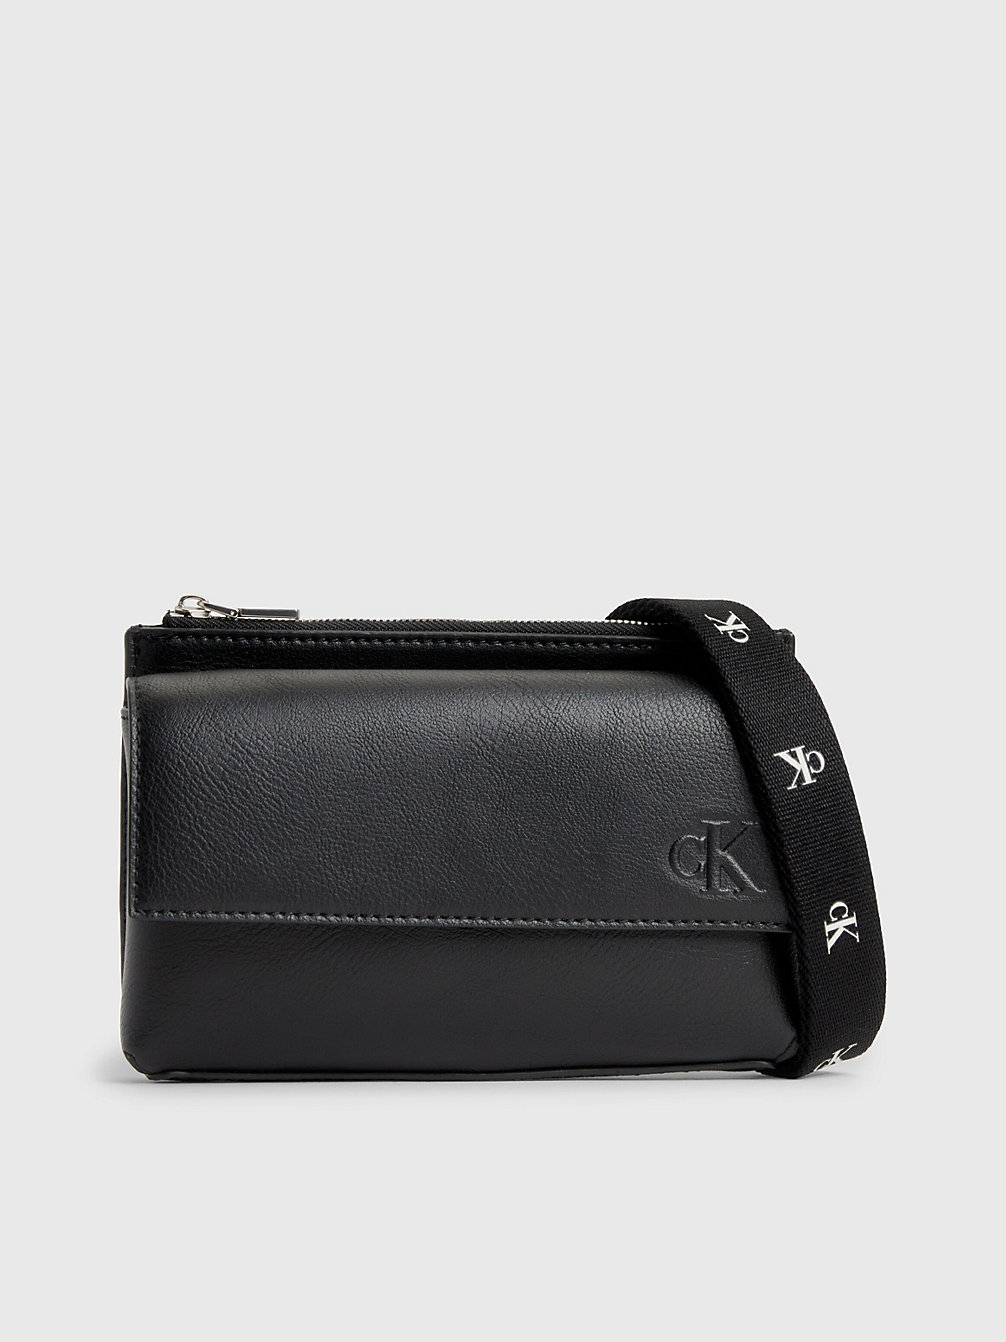 BLACK > Crossbody-Handy-Tasche Aus Recyceltem Material > undefined Damen - Calvin Klein